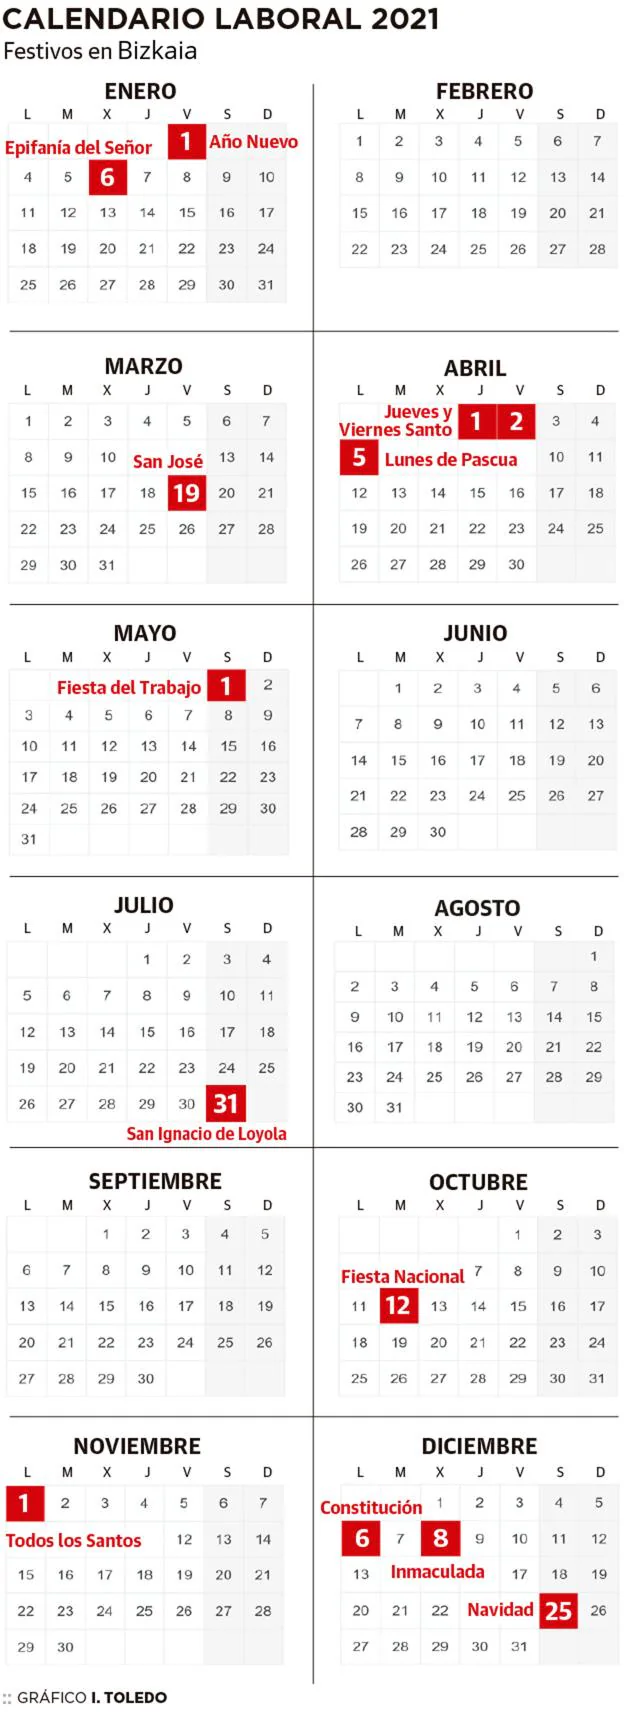 Calendario laboral de Bizkaia 2021 | El Correo